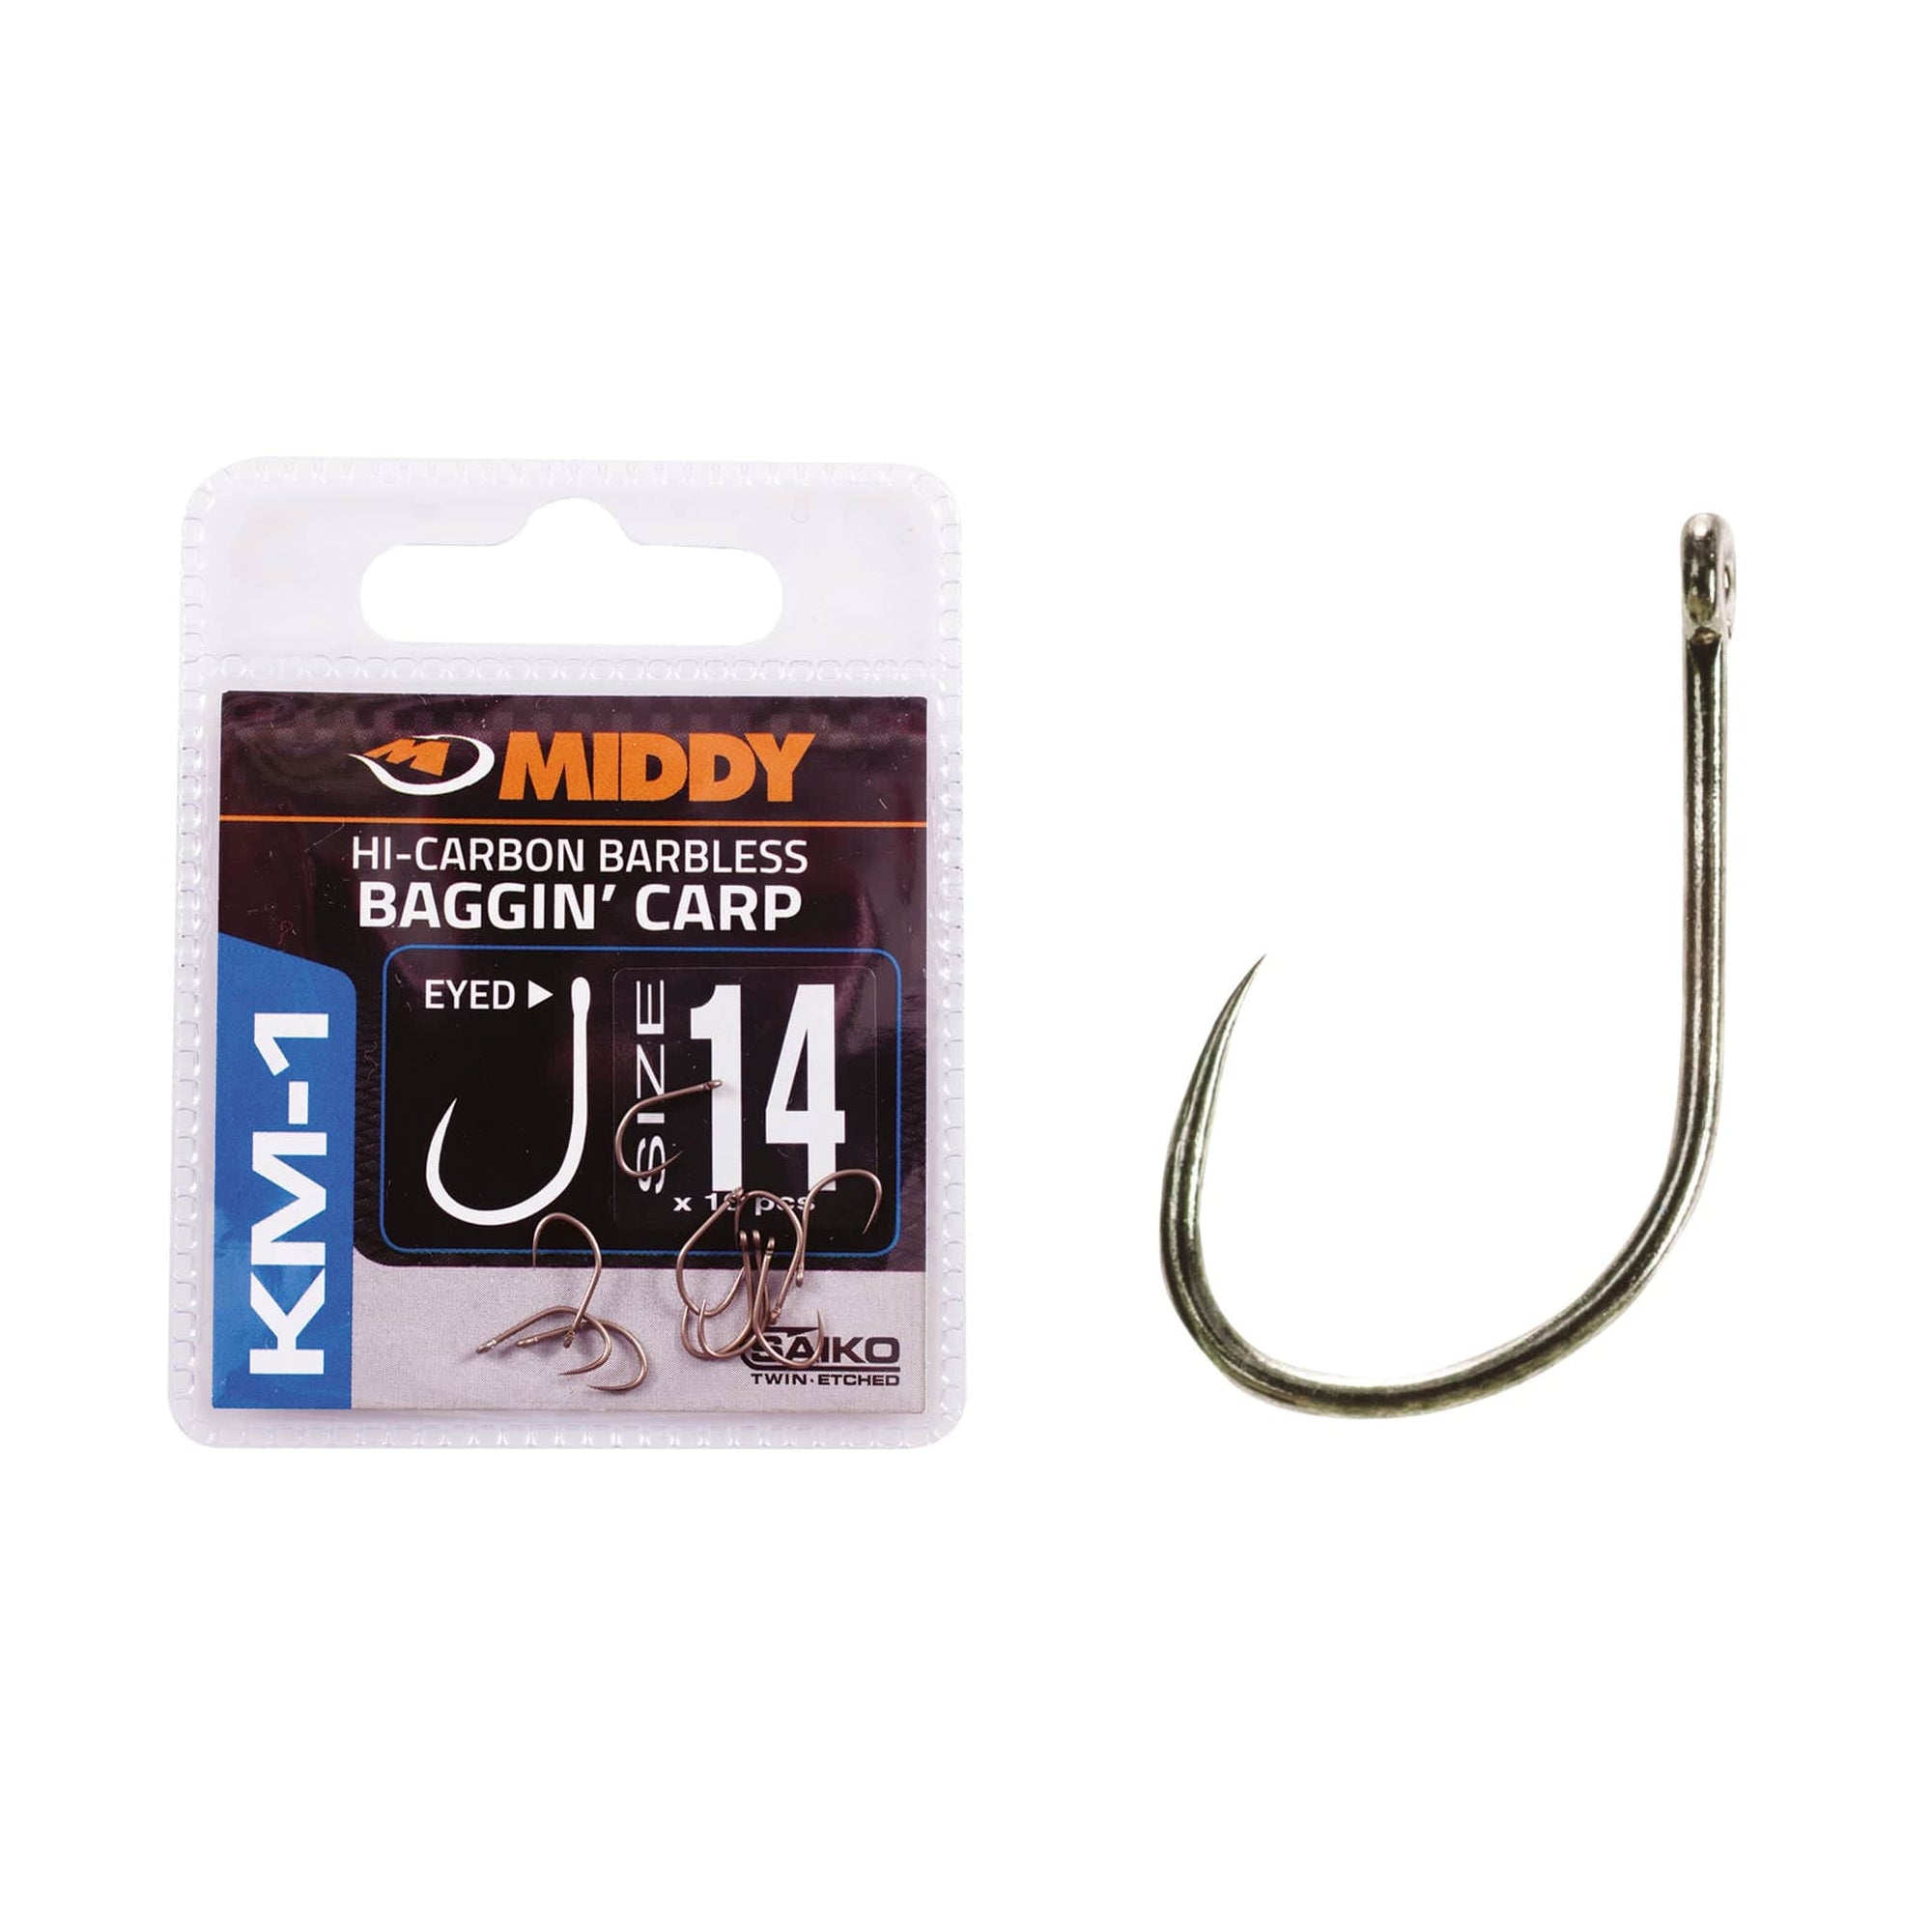 MIDDY KM-1 Baggin' Carp Eyed Hooks 8s - 20s sizes (10pc pkt).